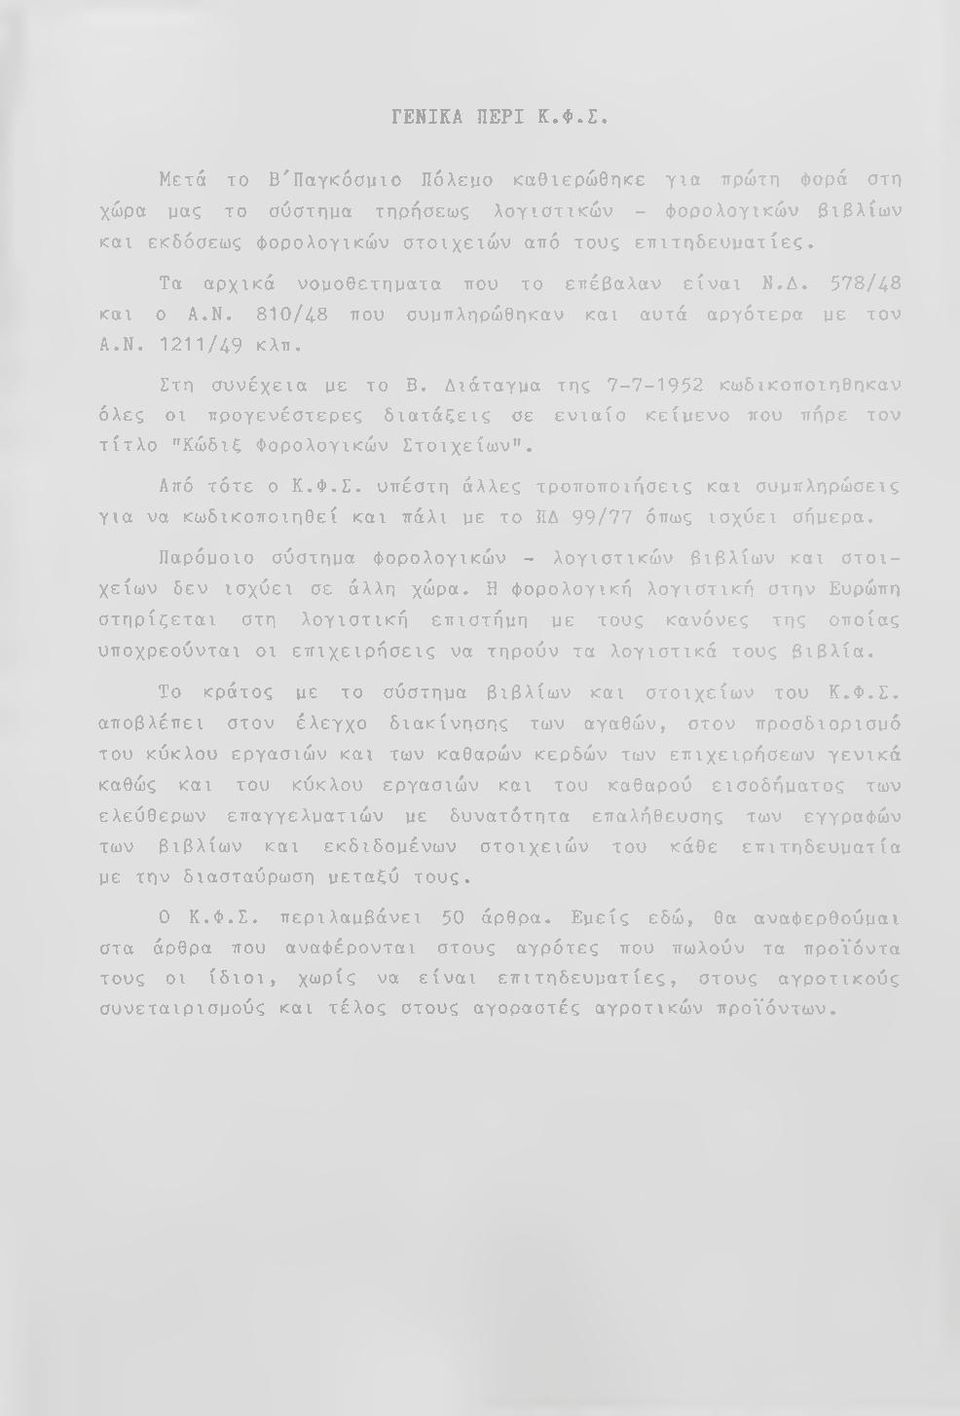 Διάταγμα της 7-7-1952 κωδικοποιηθηκαν όλες οι προγενέστερες διατάξεις σε ενιαίο κείμενο που πήρε τον τίτλο "Κώδιξ Φορολογικών Στ